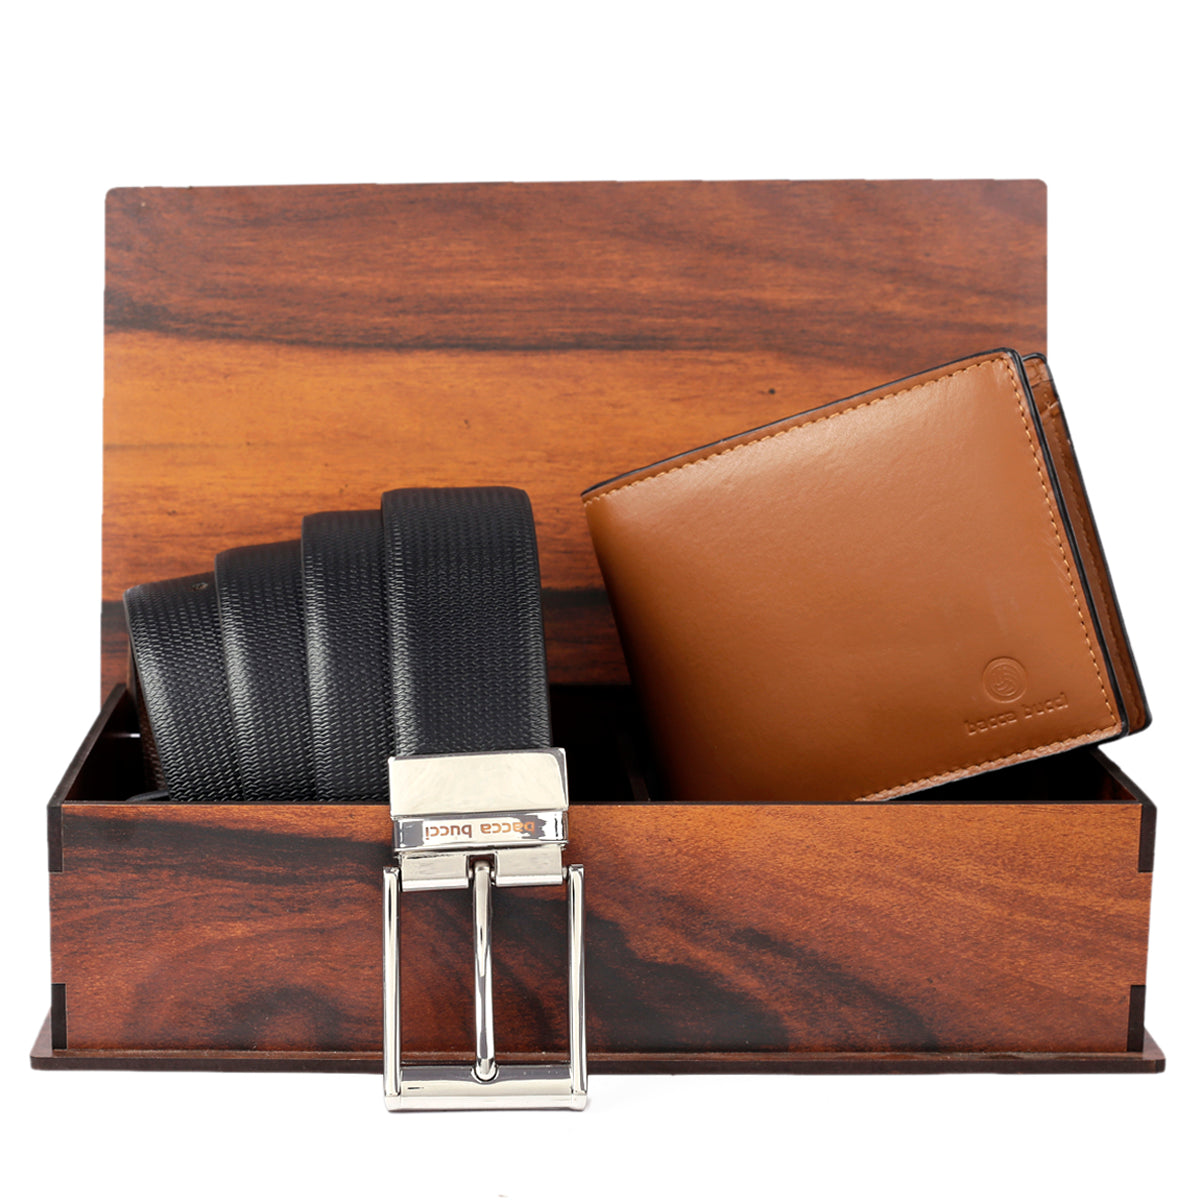 Best Gift For Older Men|men's Leather Belt & Wallet Gift Set - Cowskin  Solid Pattern, 65cm Buckle